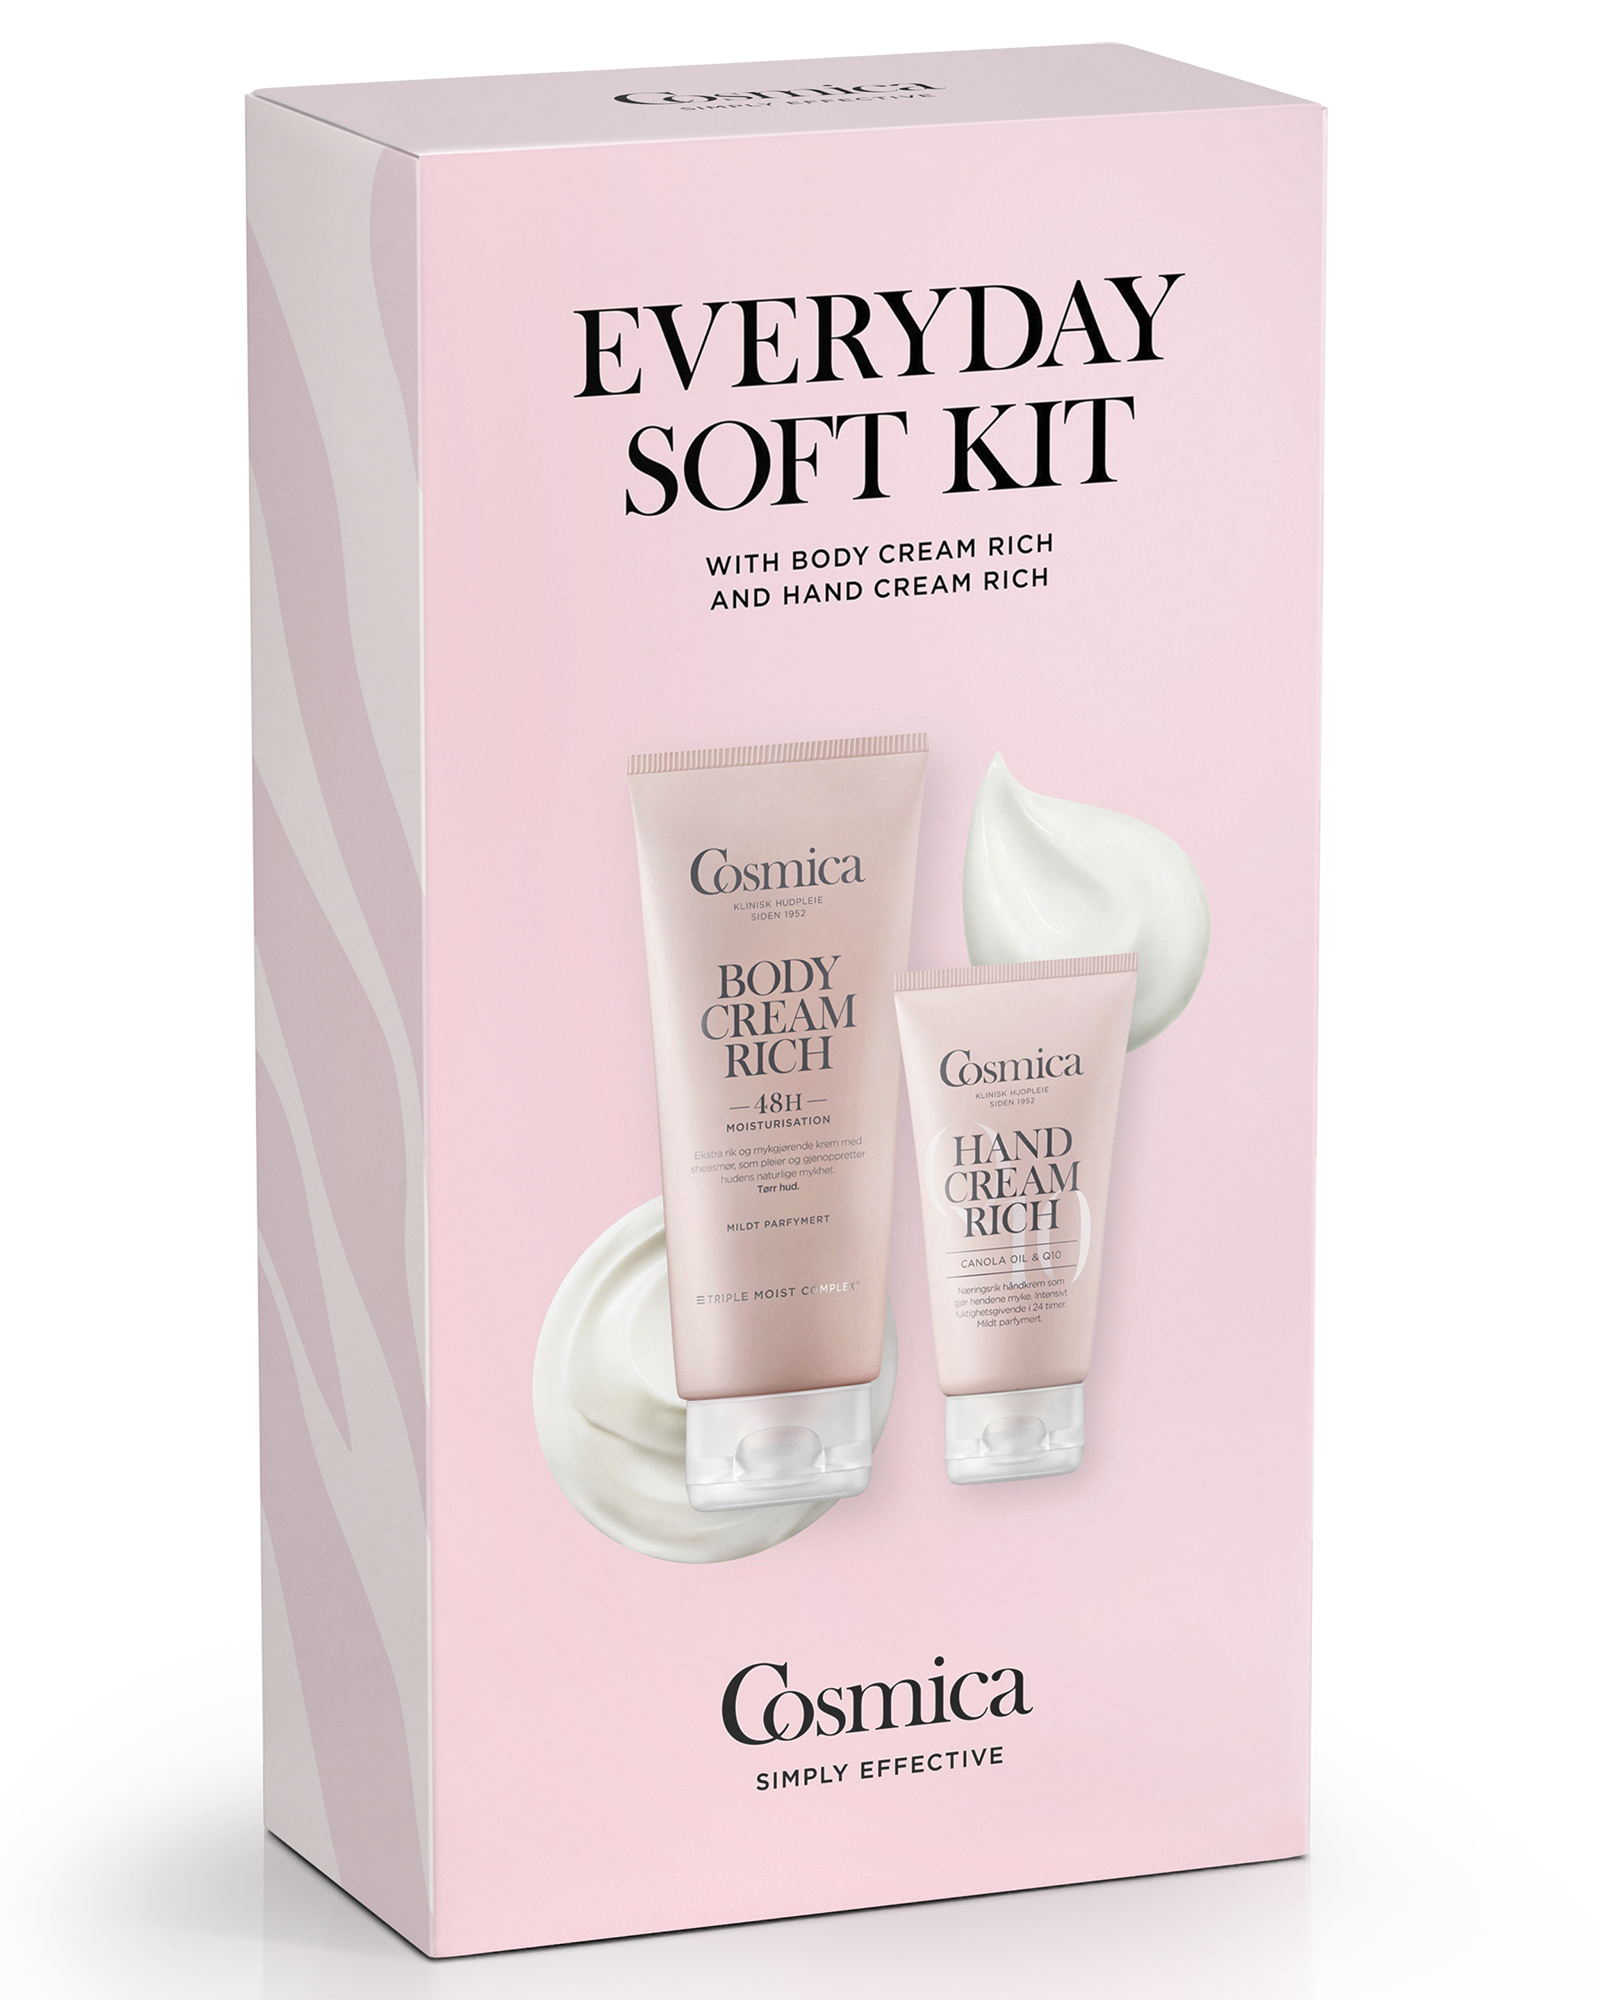 Cosmica Everyday Soft gavesett hånd- og kroppskrem 75 + 200 ml - Apotek 1